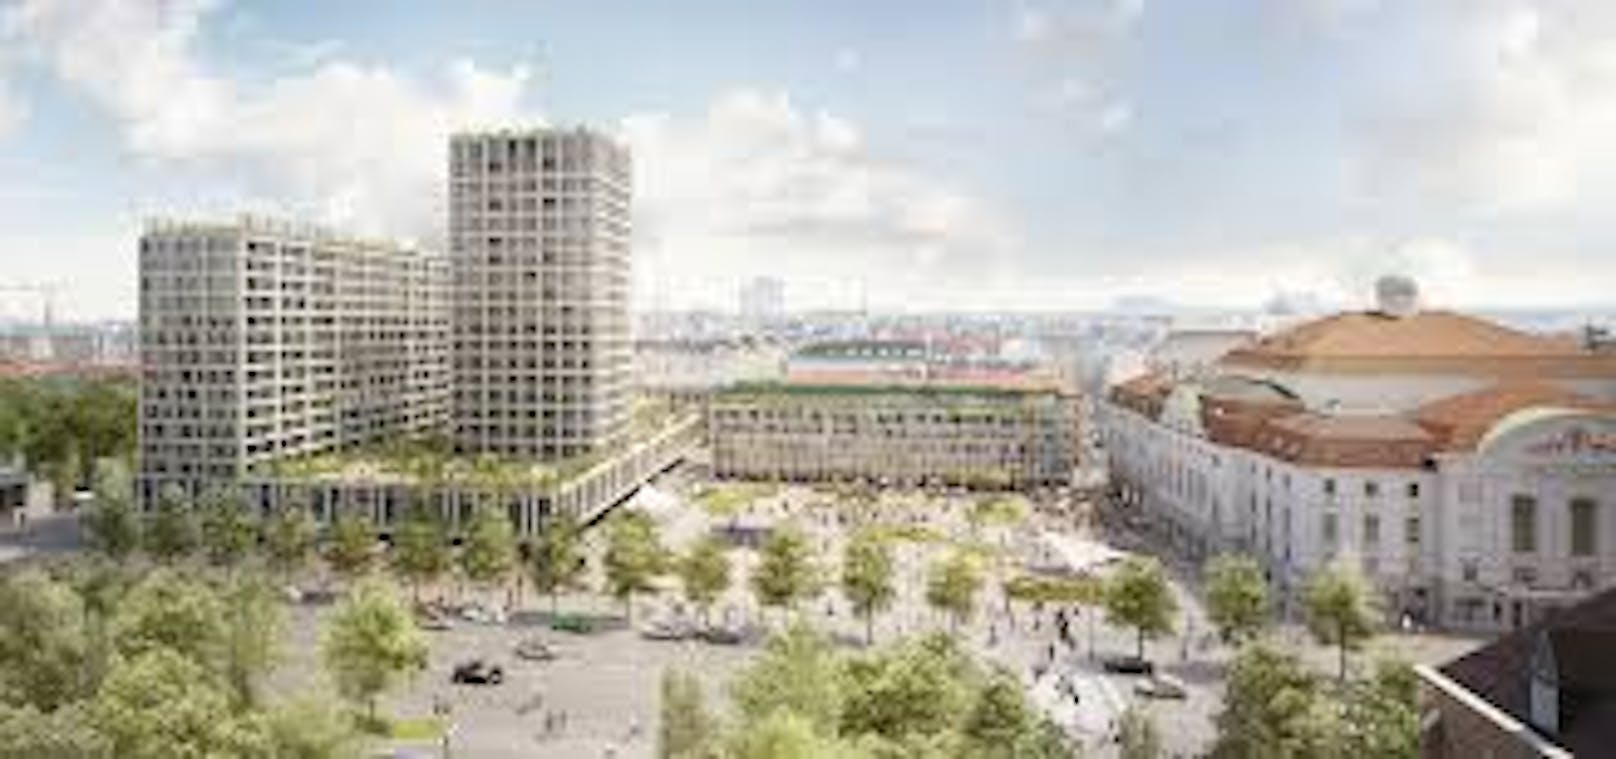 Seit 2017 steht die Stadt Wien wegen dem Heumarkt-Projekt auf der roten Liste der UNESCO. Ein "positiver" Vorbericht lässt nun Hoffnung aufkommen, dass Wien 2022 wieder gestrichen wird.